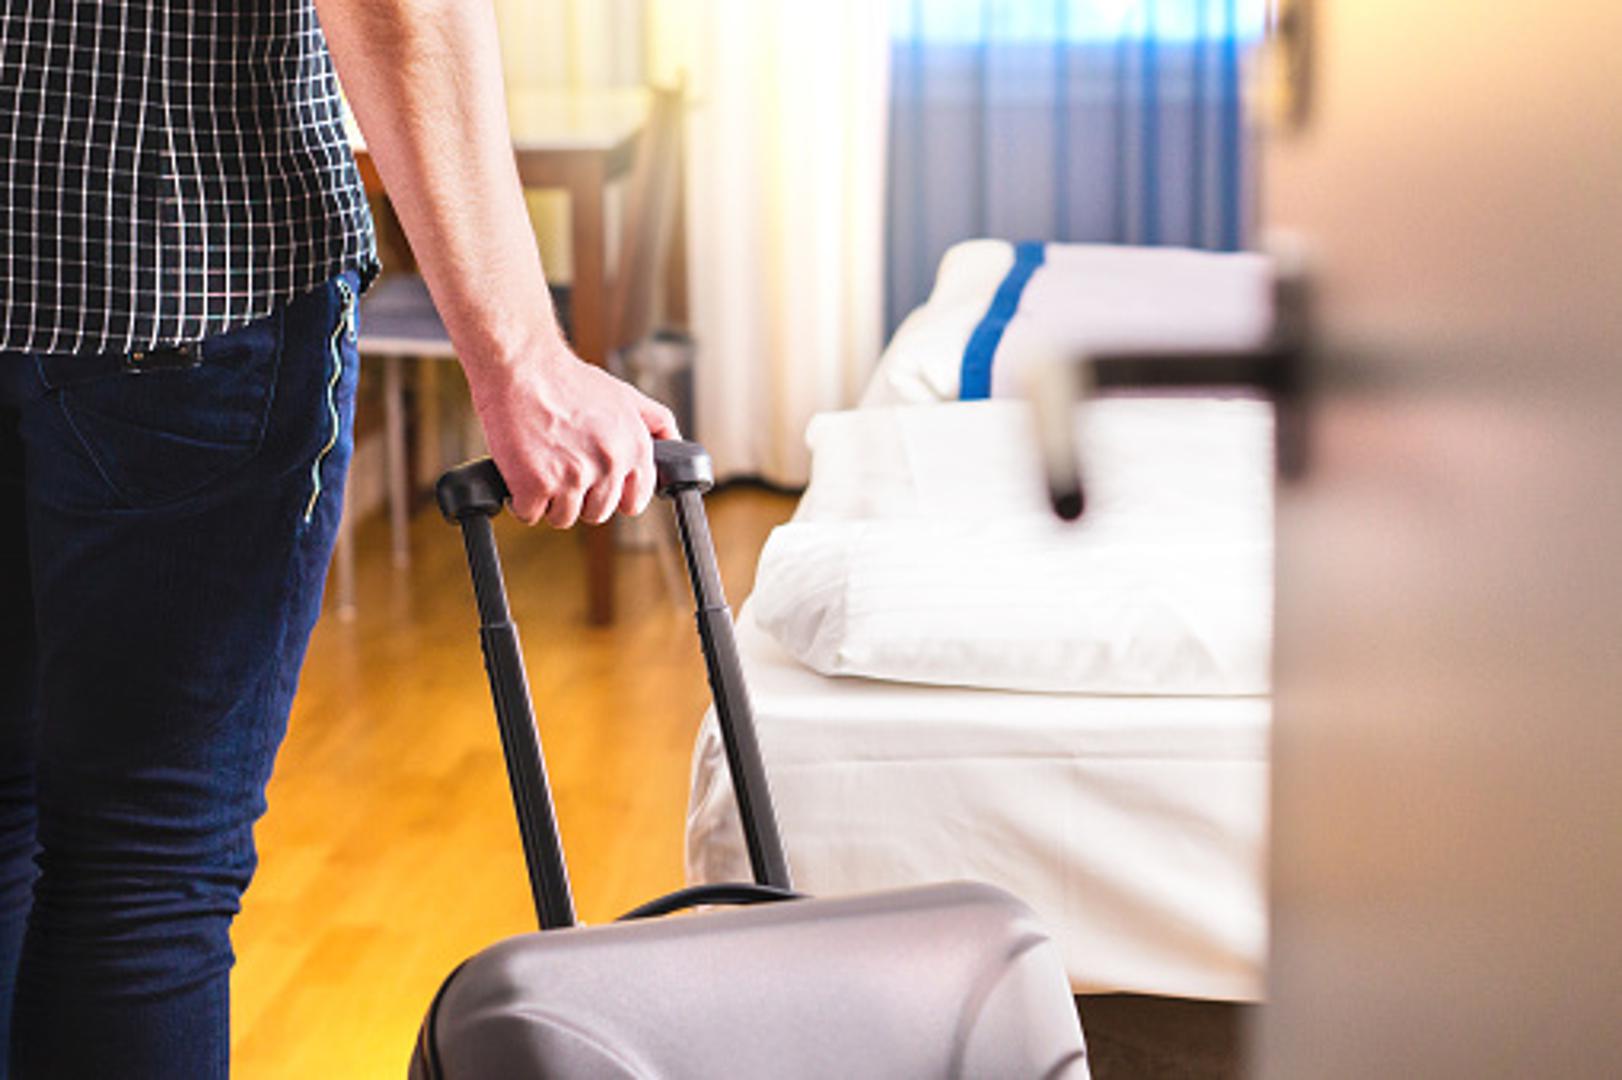 Ne ostavljajte svoj kovčeg u blizini kreveta ili hladnjaka. Ta područja najčešće će imati veći broj buba ili žohara koji lako mogu ući u njega. 

